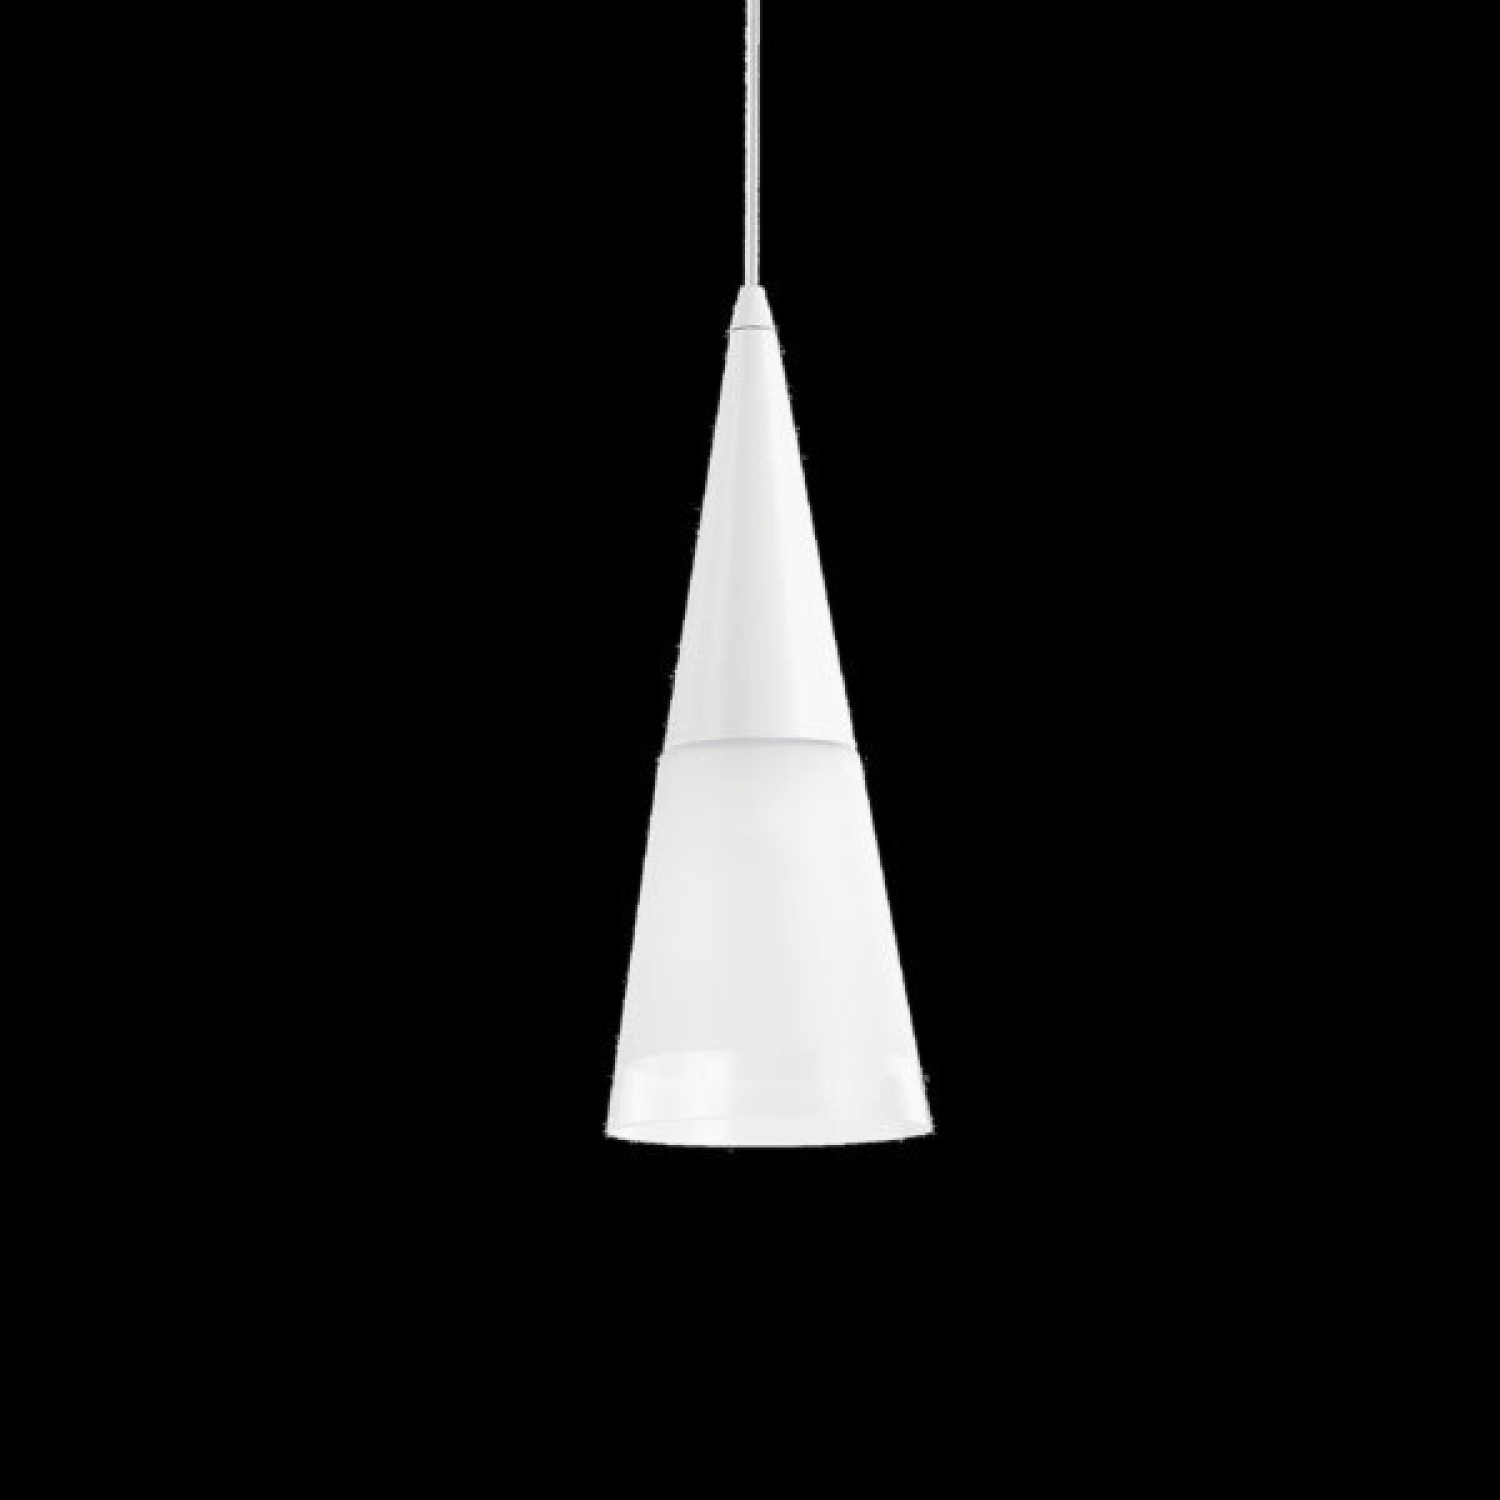 Подвесной светильник Ideal Lux CONO SP1 BIANCO 112459